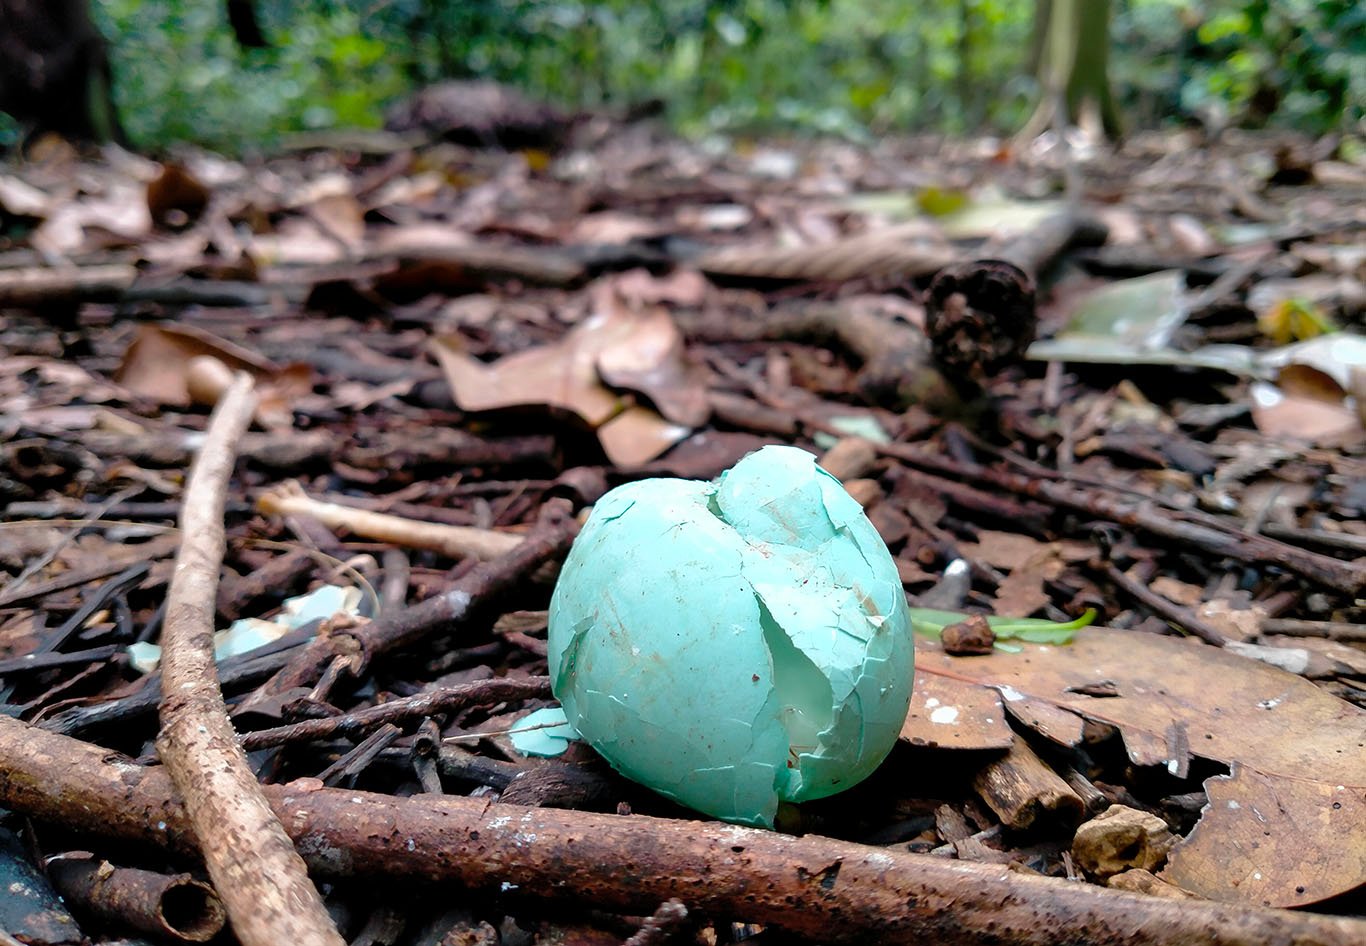 Pecahan telur di area Arboretum UGM